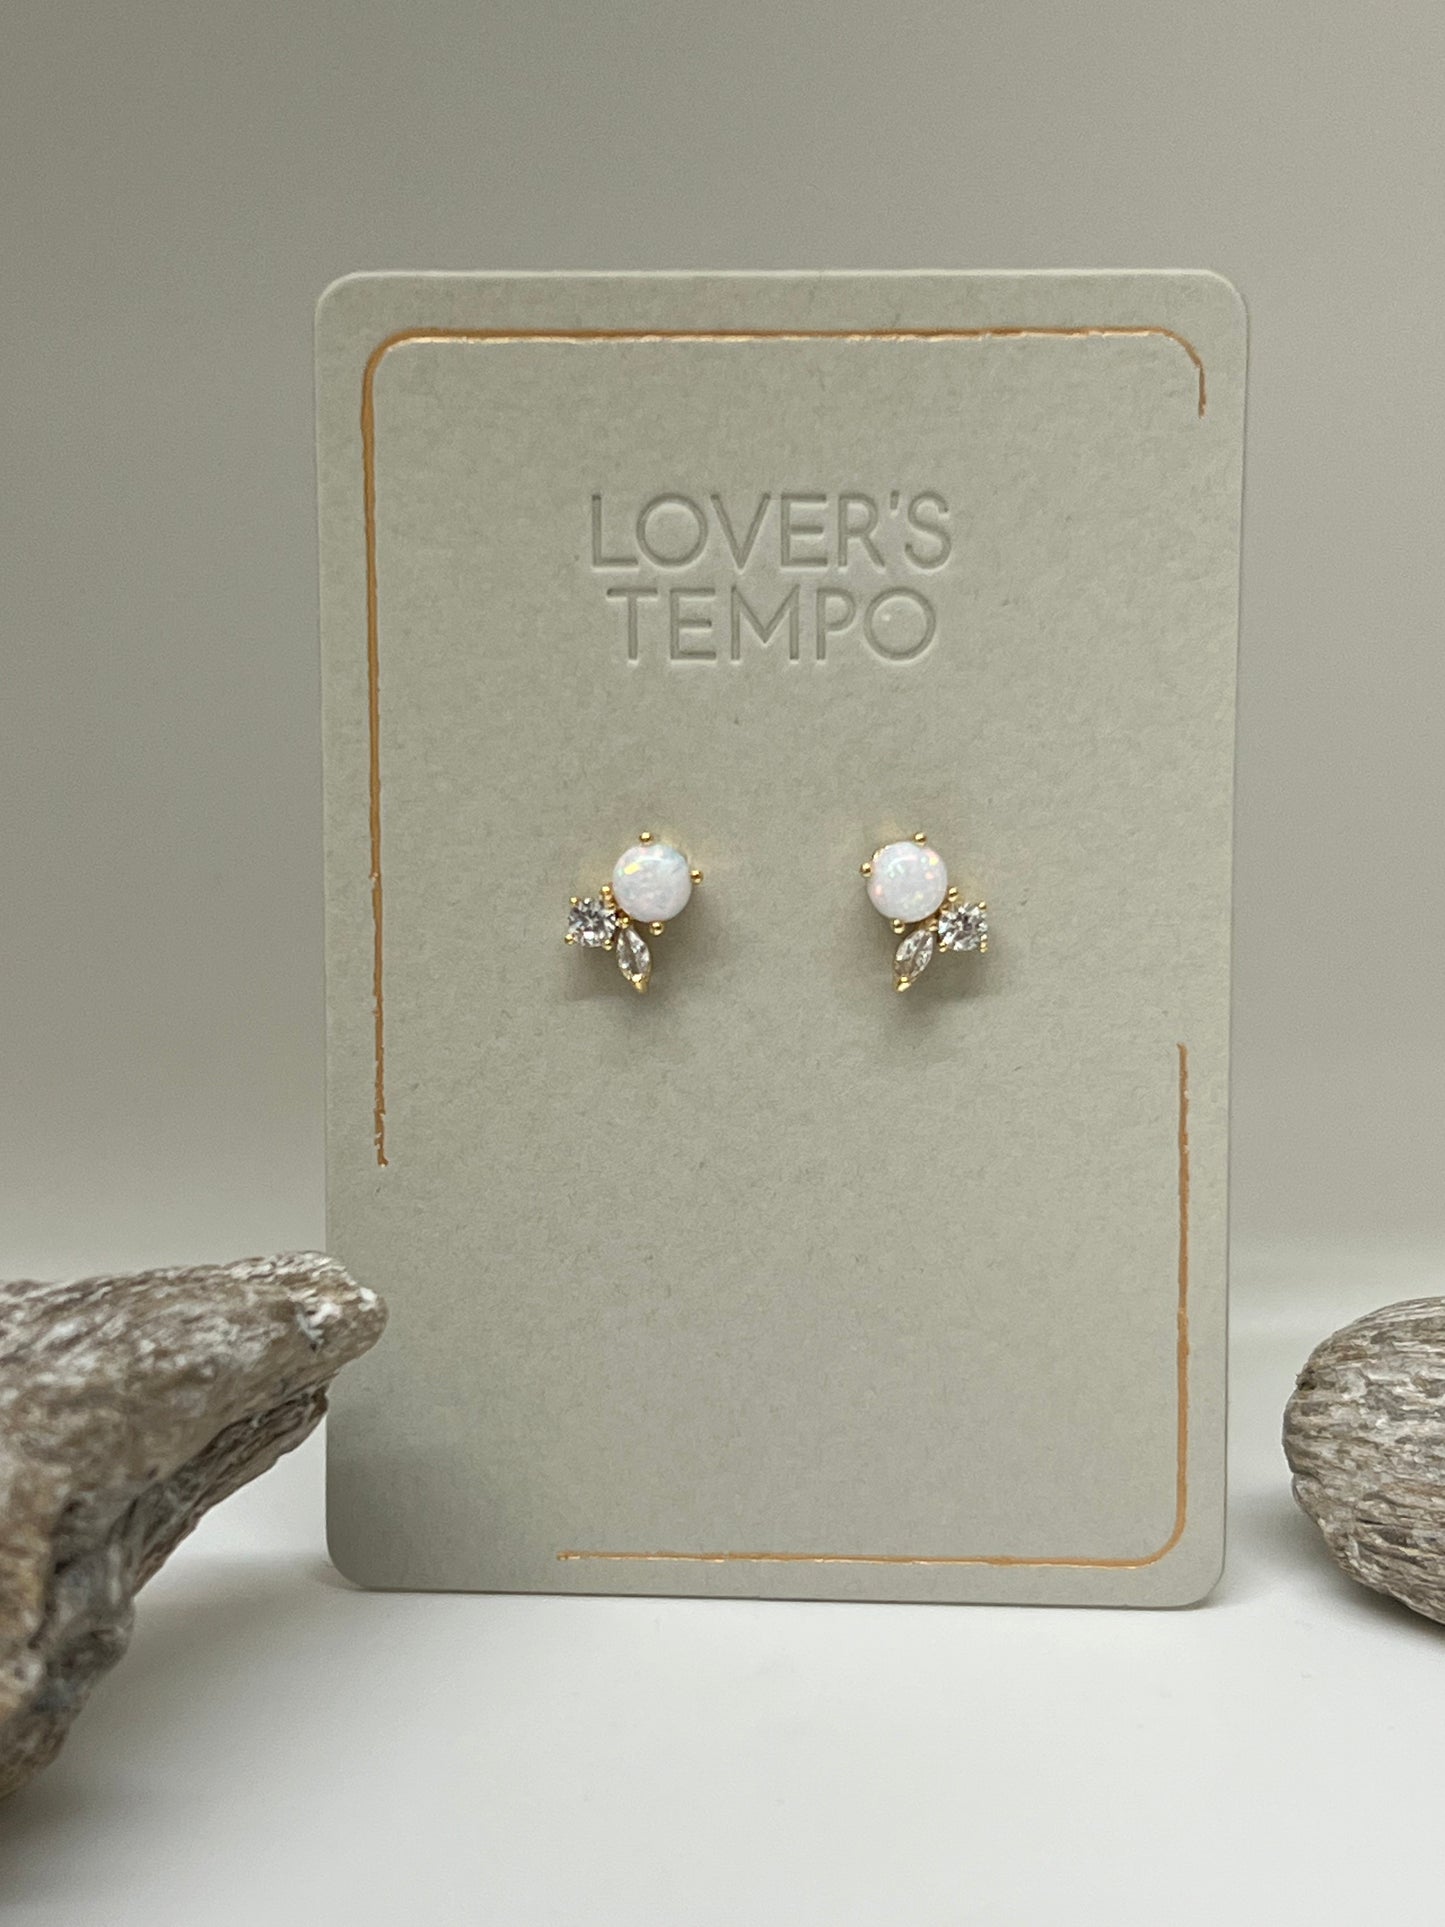 Boucles Adora stud earrings de Vancouver, dessinée à Vancouver 1SP22006-opl Lovers Tempo